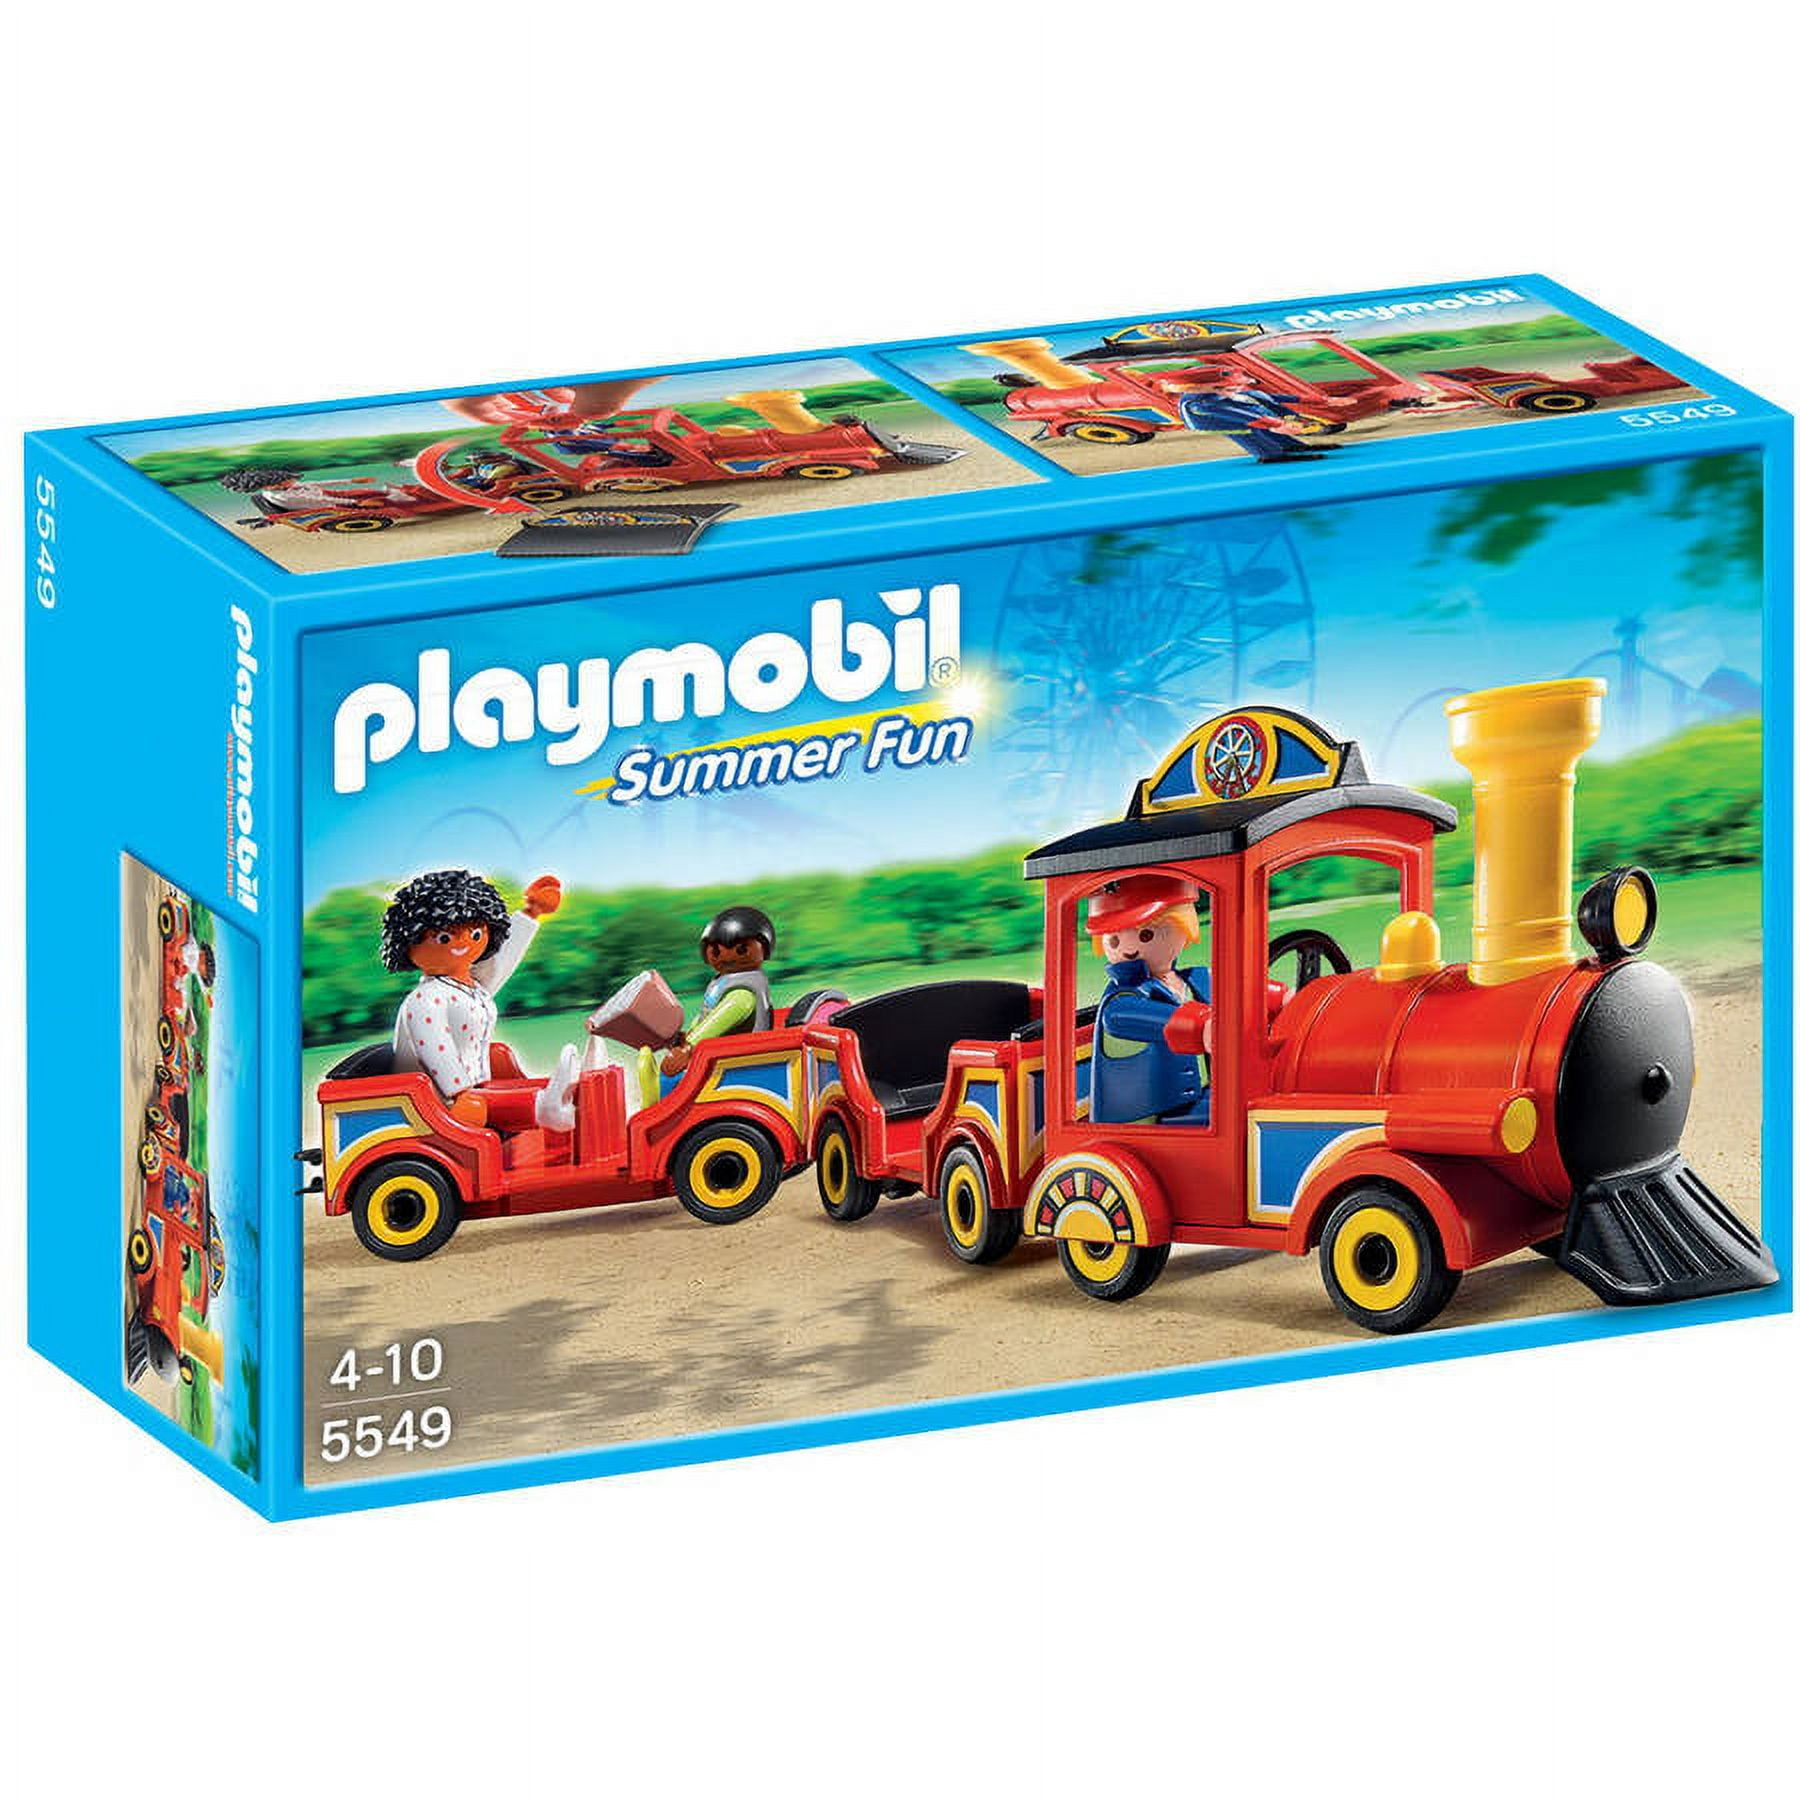 Circuit Train Playmobil, Playmobil Bricks Toys